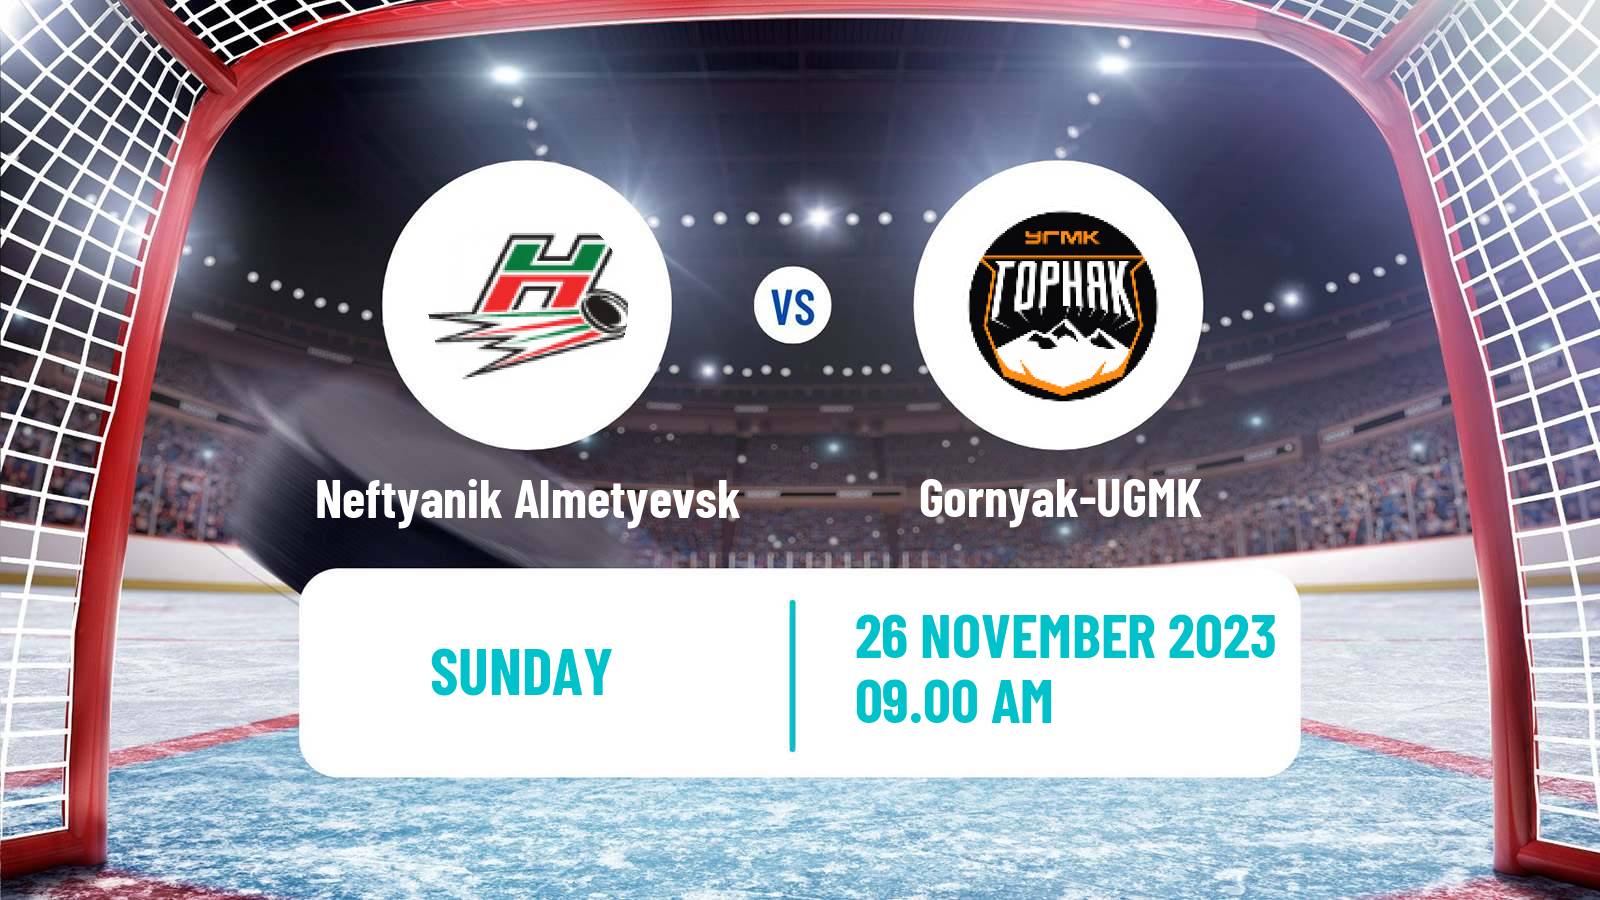 Hockey VHL Neftyanik Almetyevsk - Gornyak-UGMK